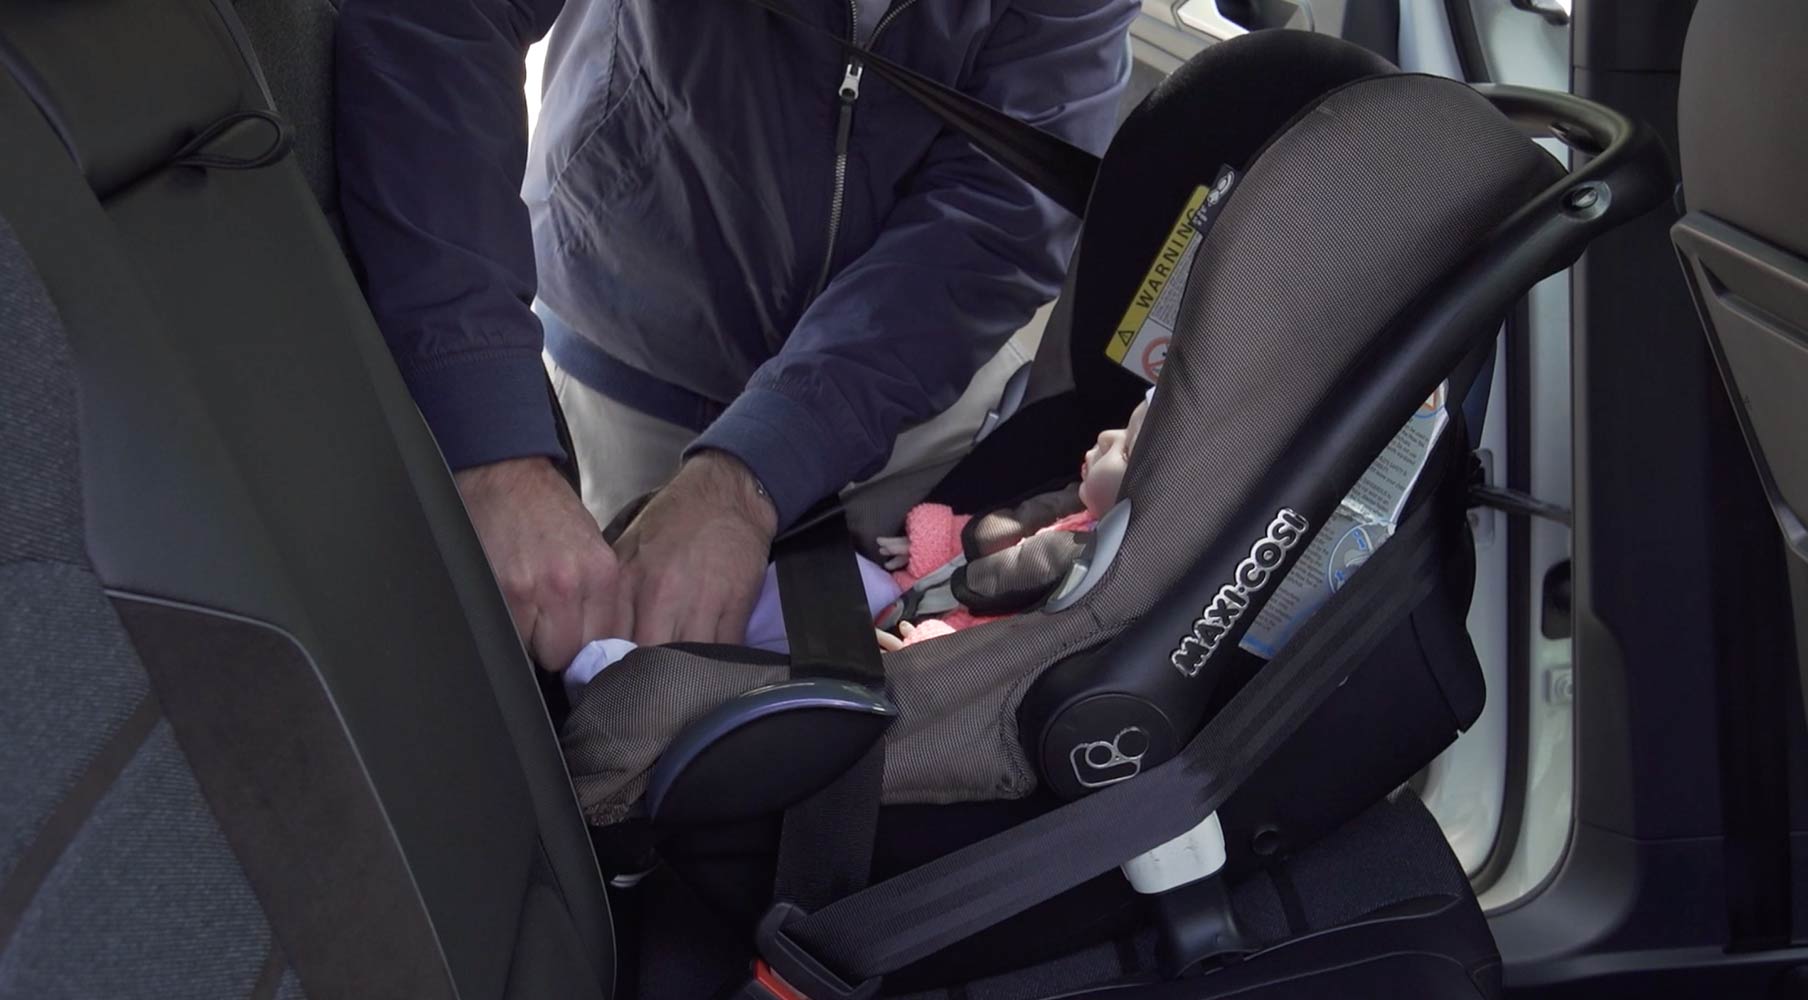 El uso correcto del sistema Isofix (Sistema de anclaje de asientos para niños)  reduce 75% de accidentes graves y 90% de lesiones.